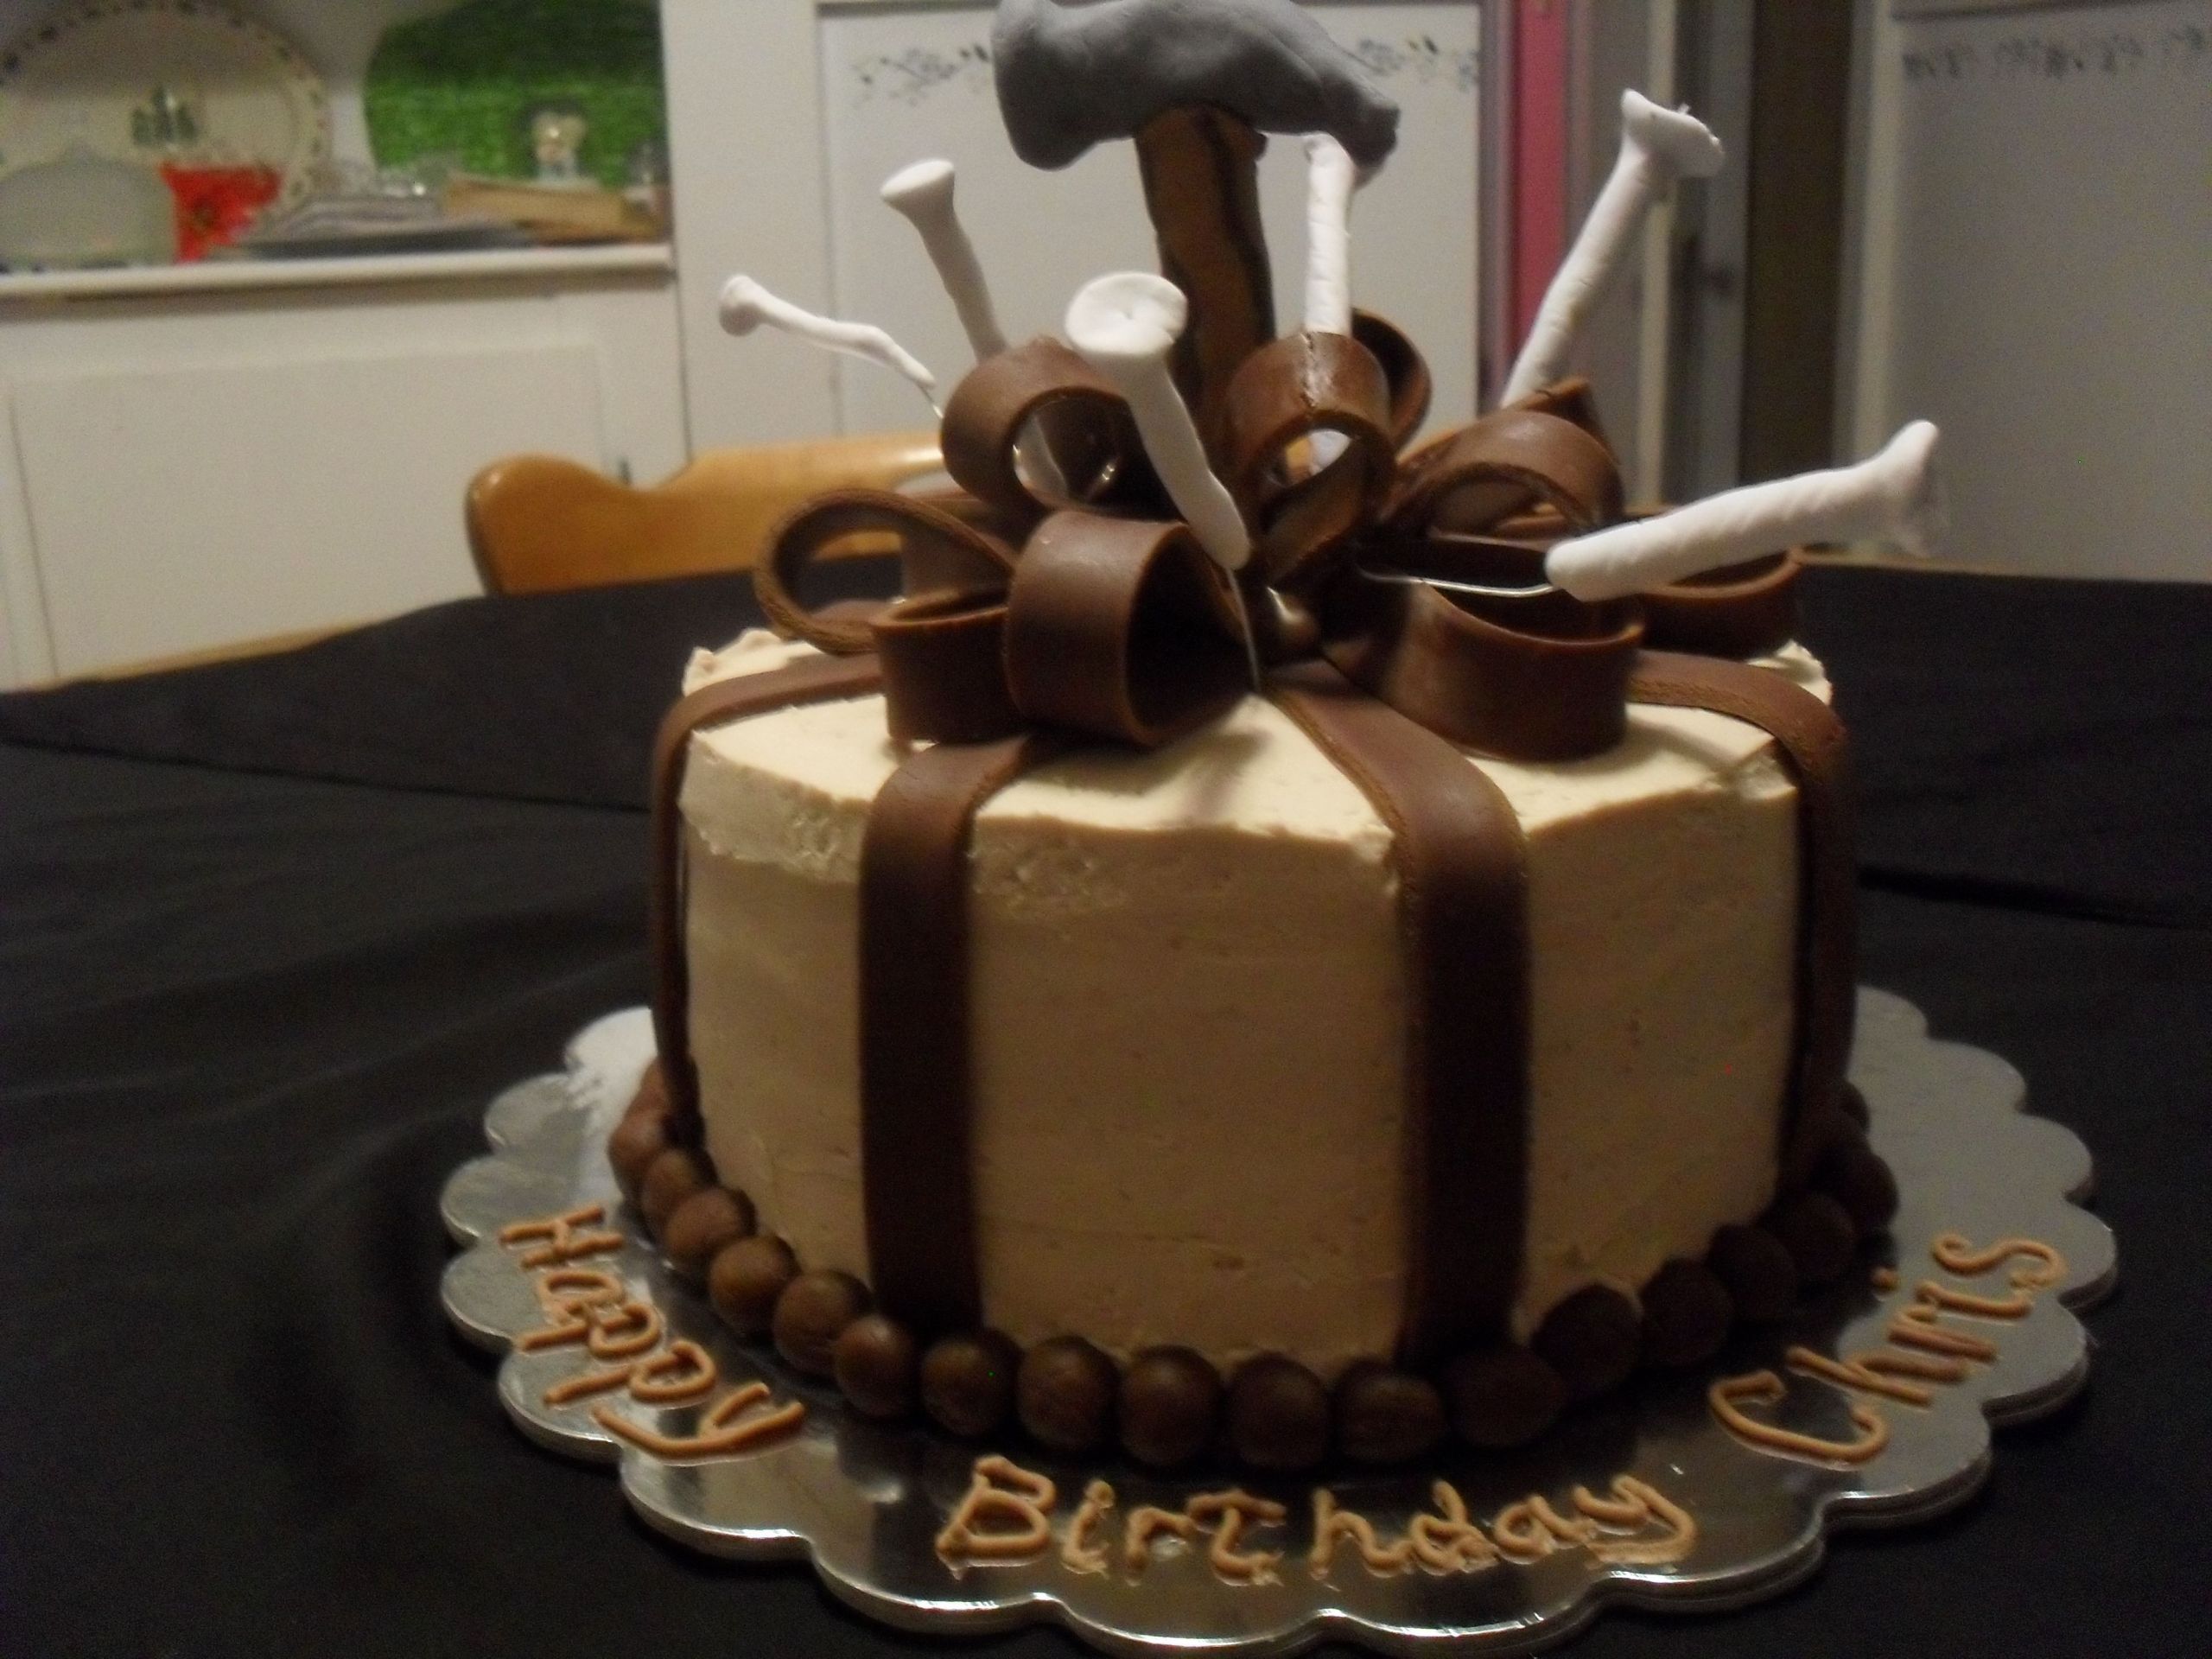 Mens Birthday Cake Decorating
 Handy man Birthday Cake in chocolate buttercream and